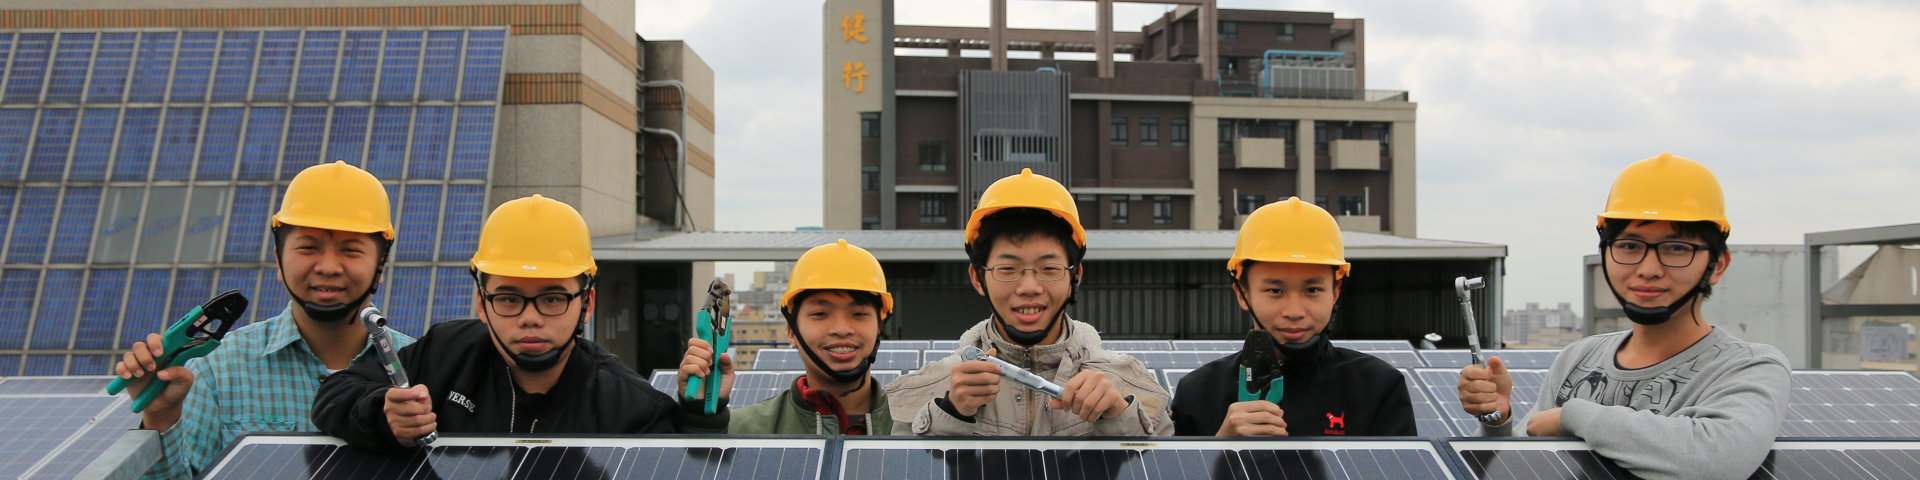 太陽光電設置乙級技術士技能檢定場